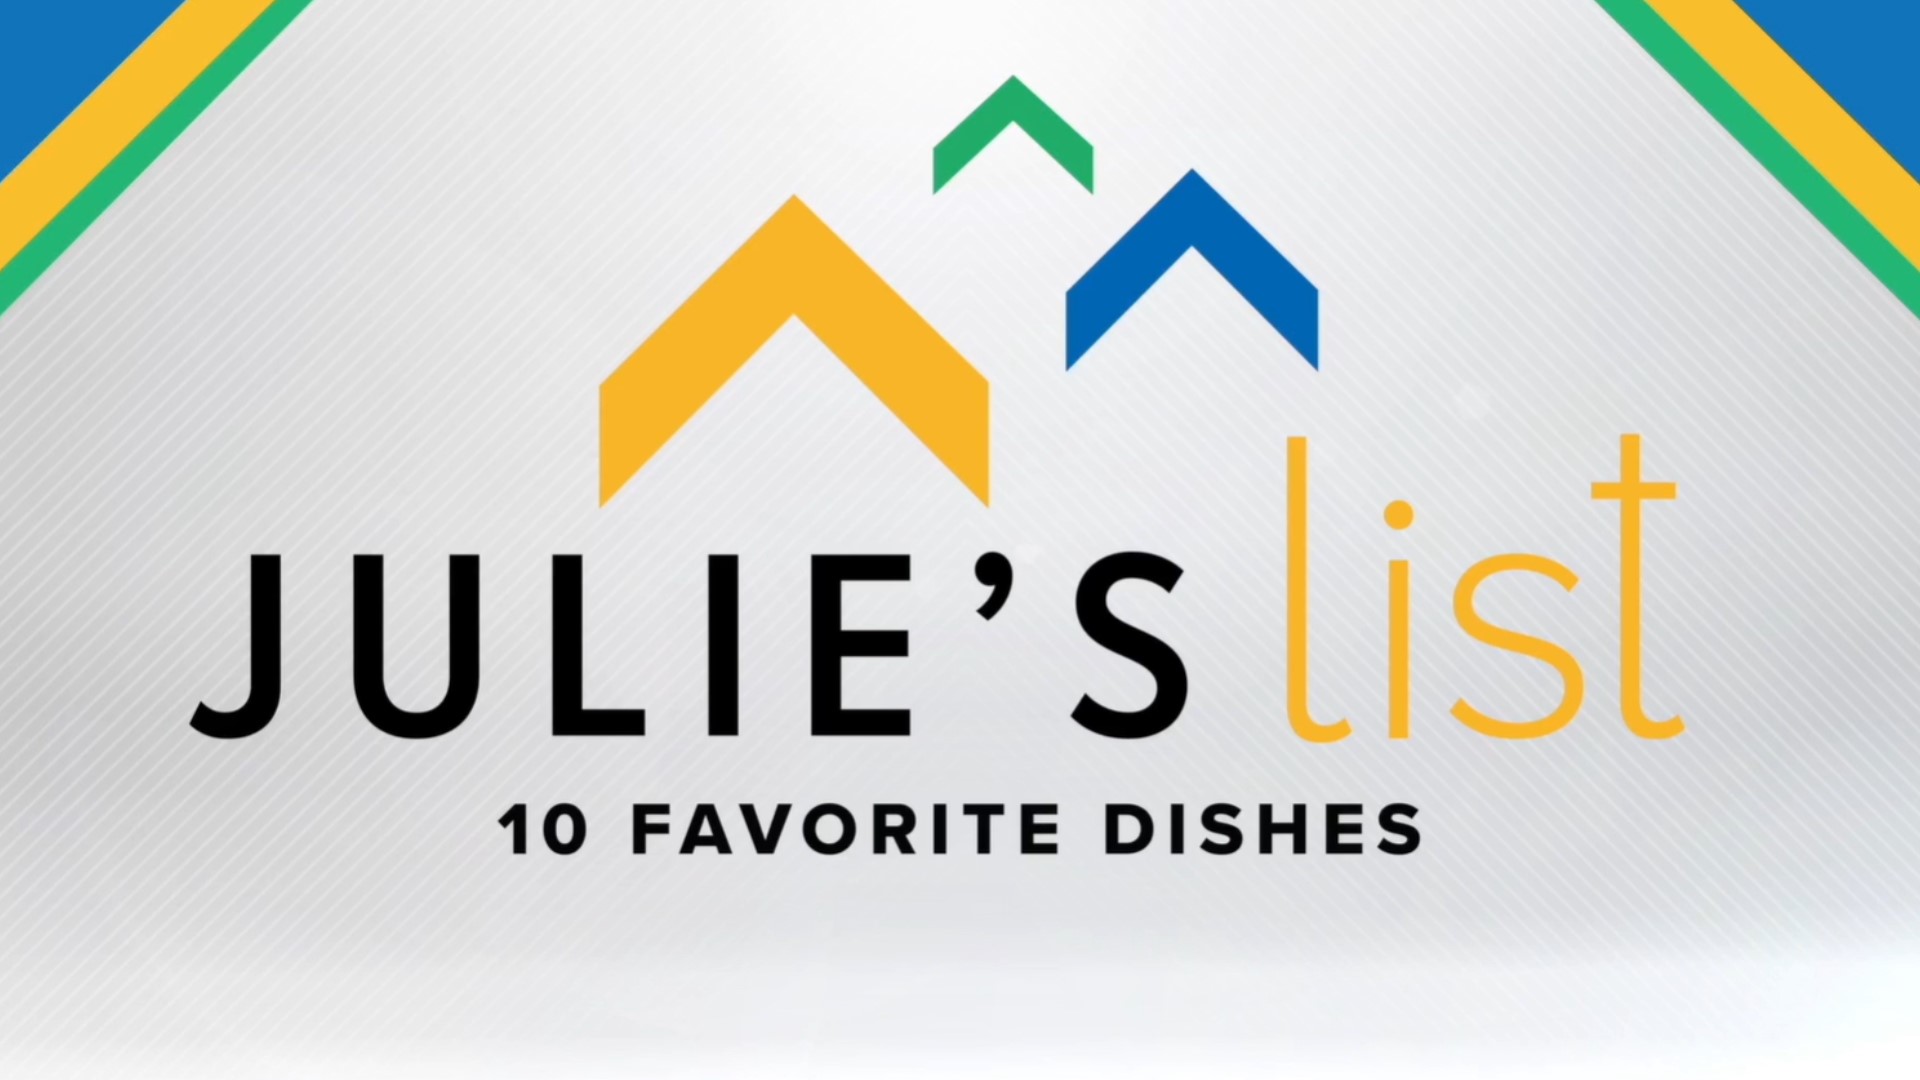 Julie's List